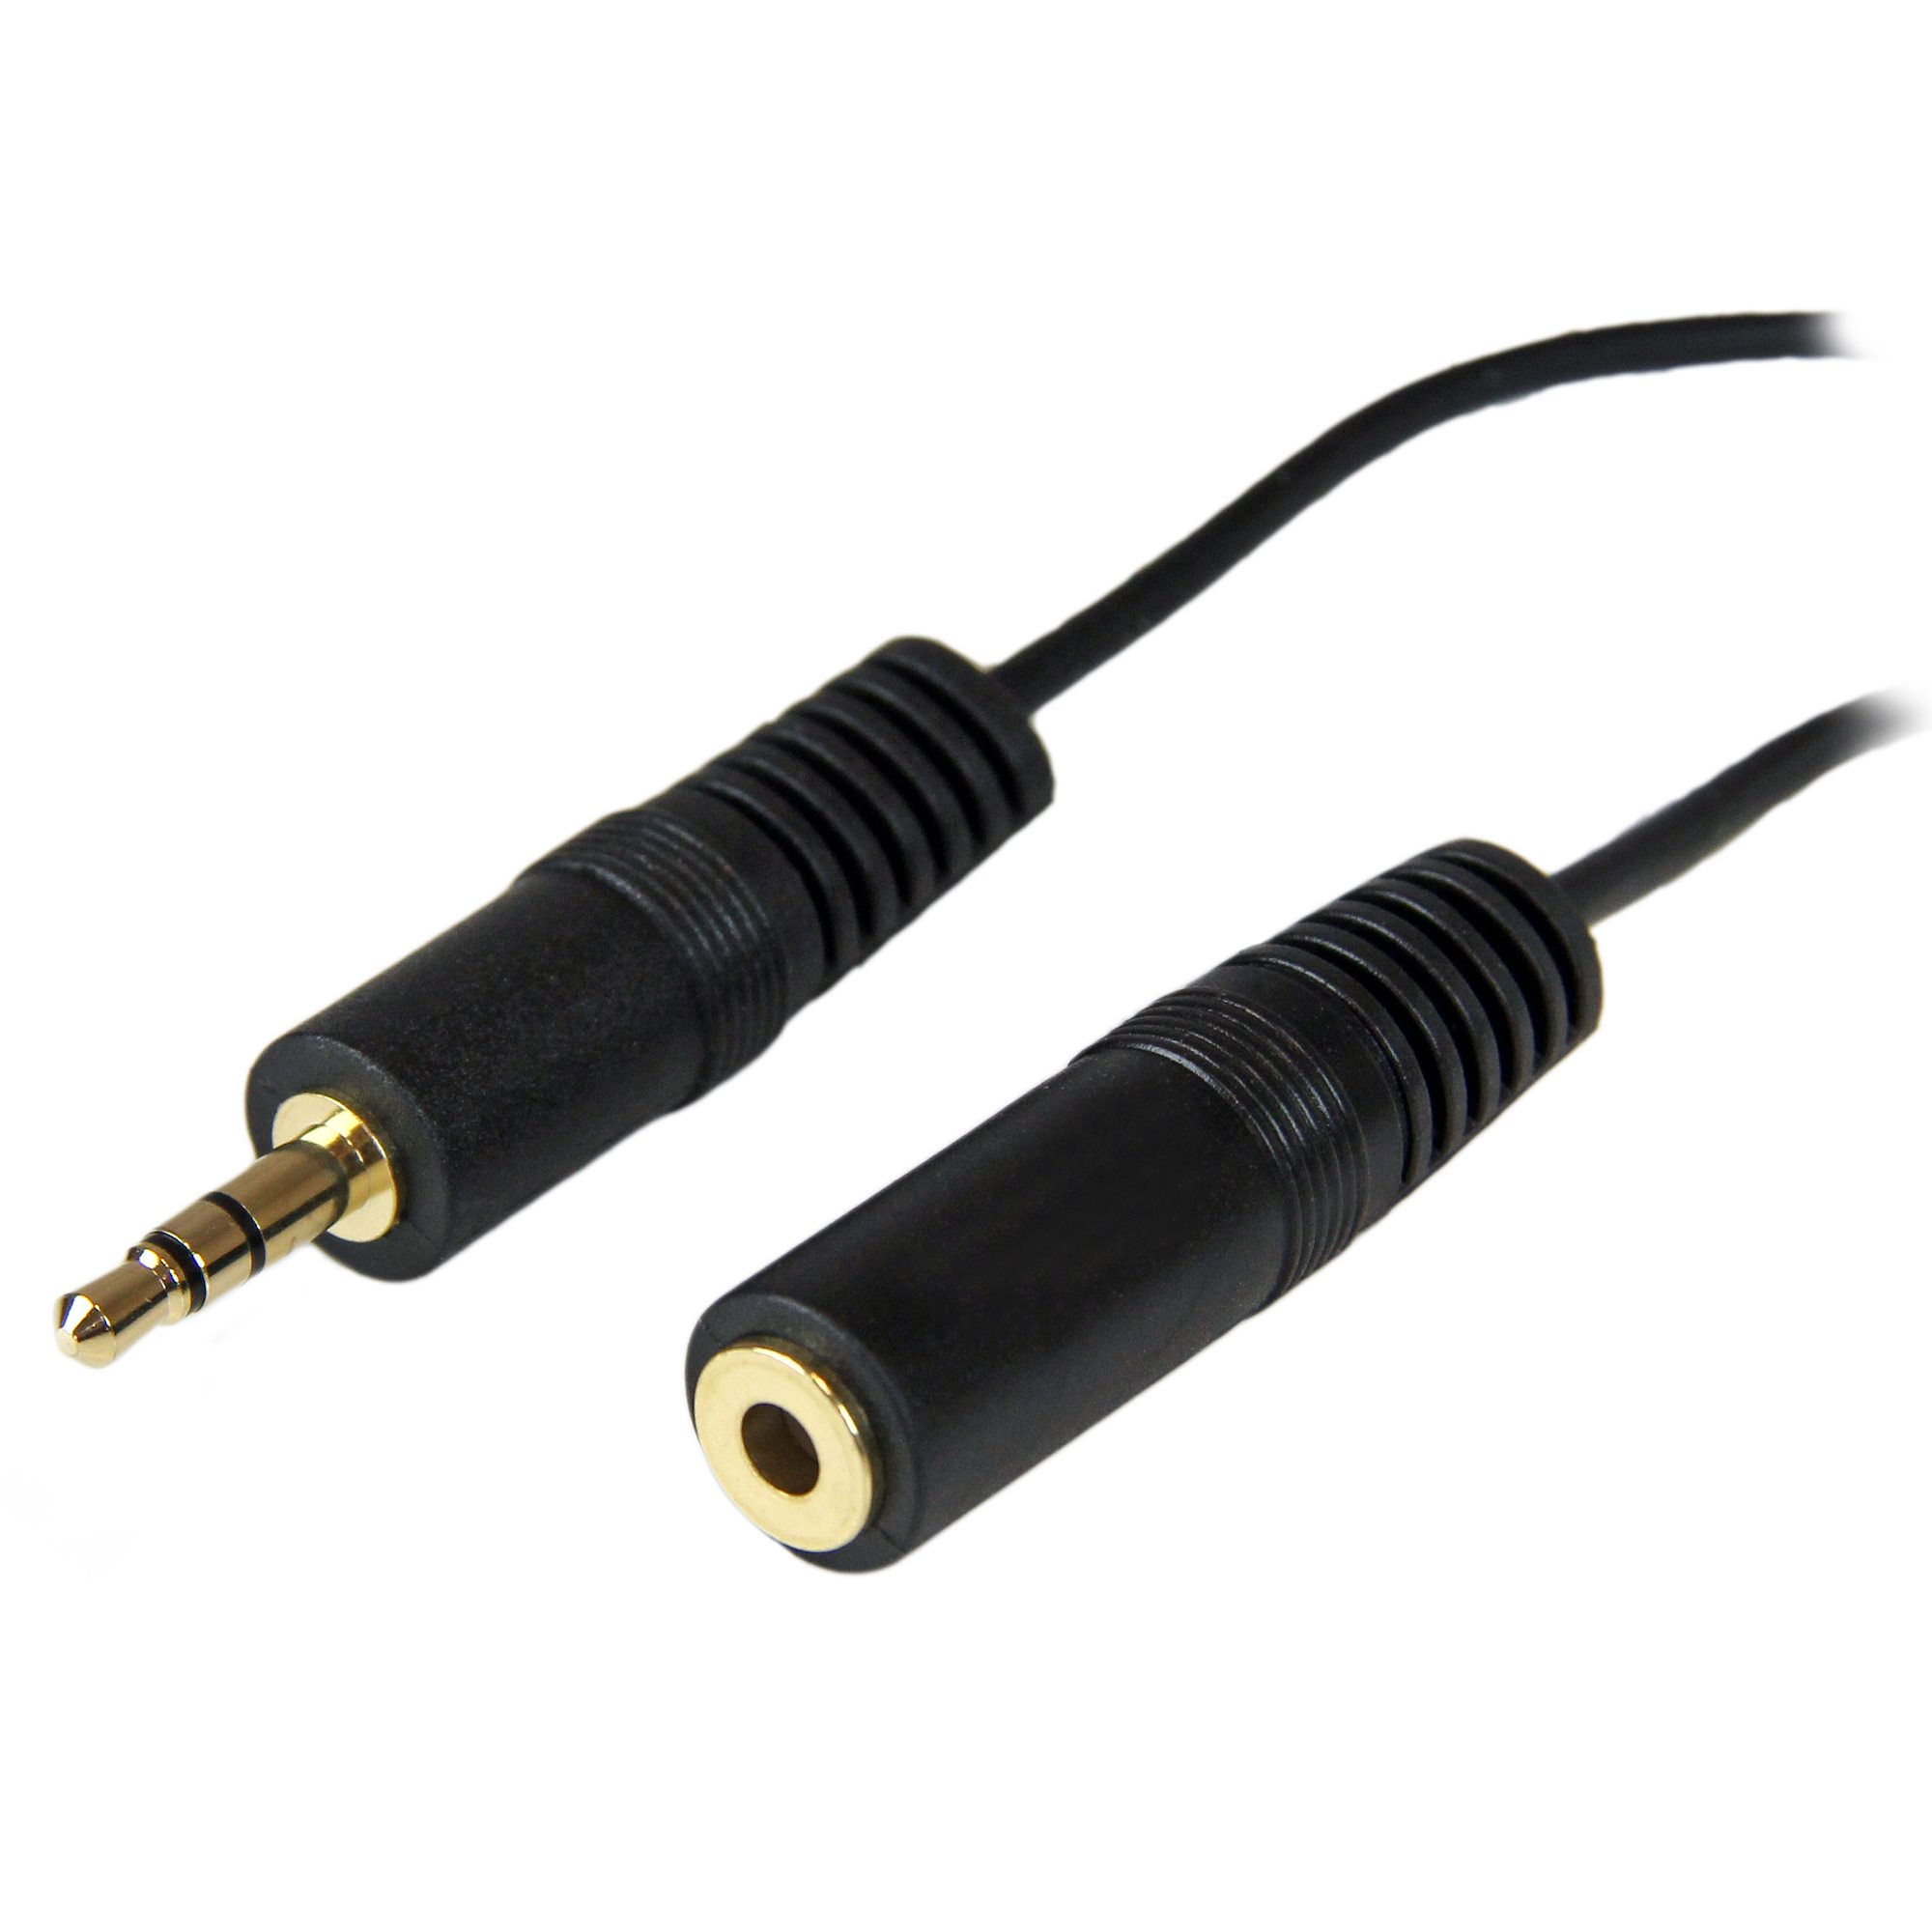 Comprar Cable de extensión de Audio Lightning a conector Jack de 3